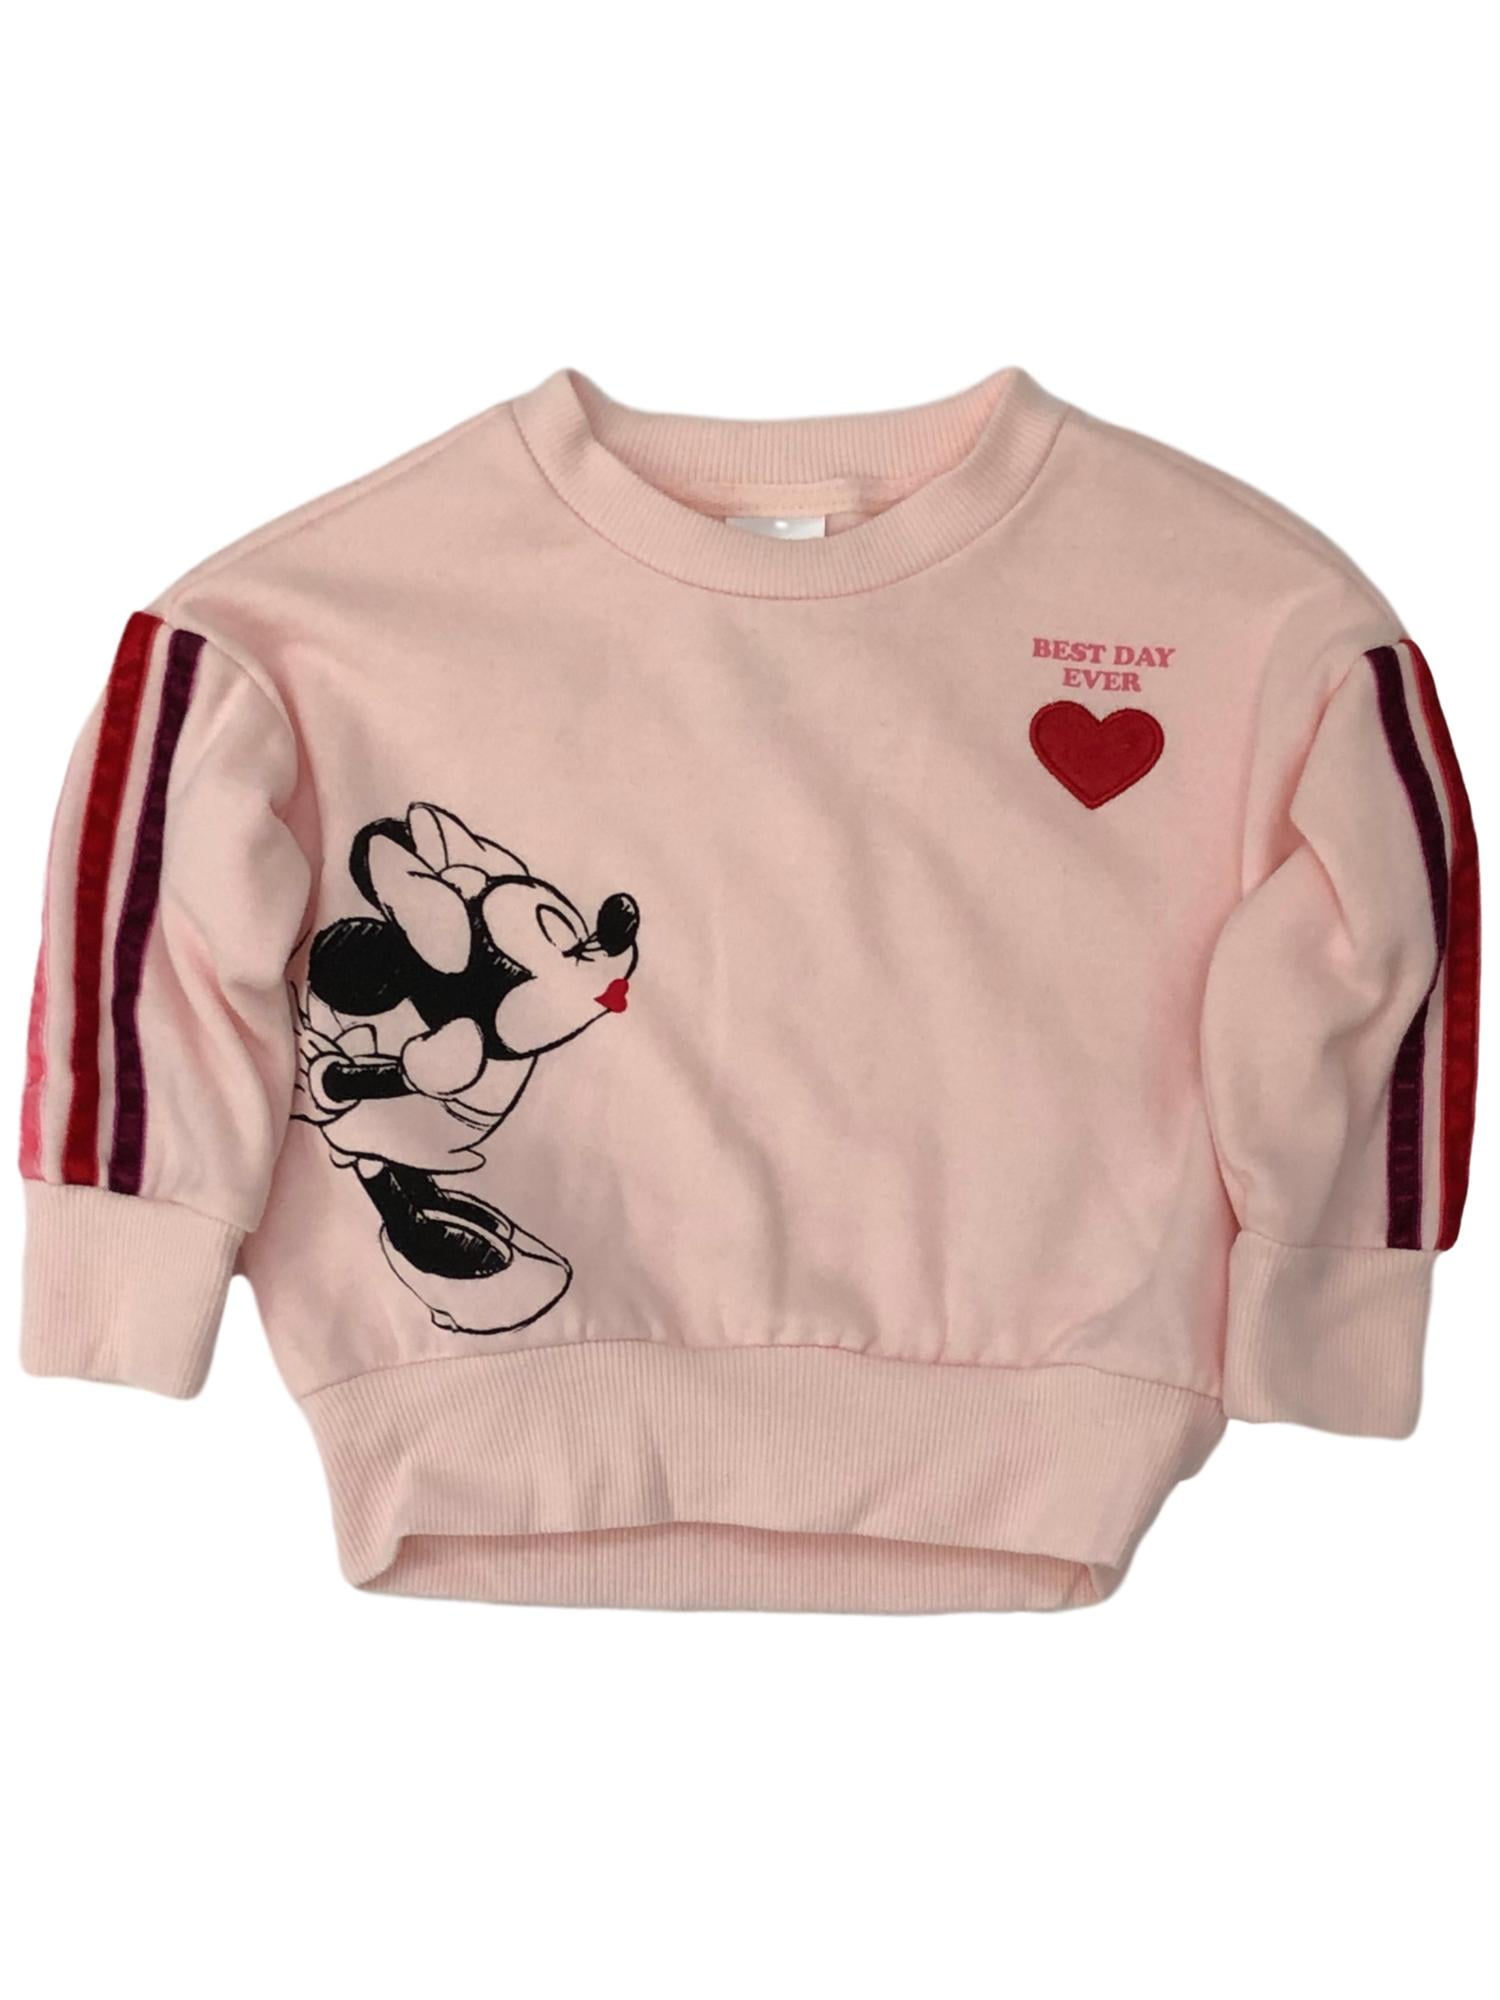 Pink Baby Minnie Womens Hoodies 3D Print Pullover Tops Sweatshirt 